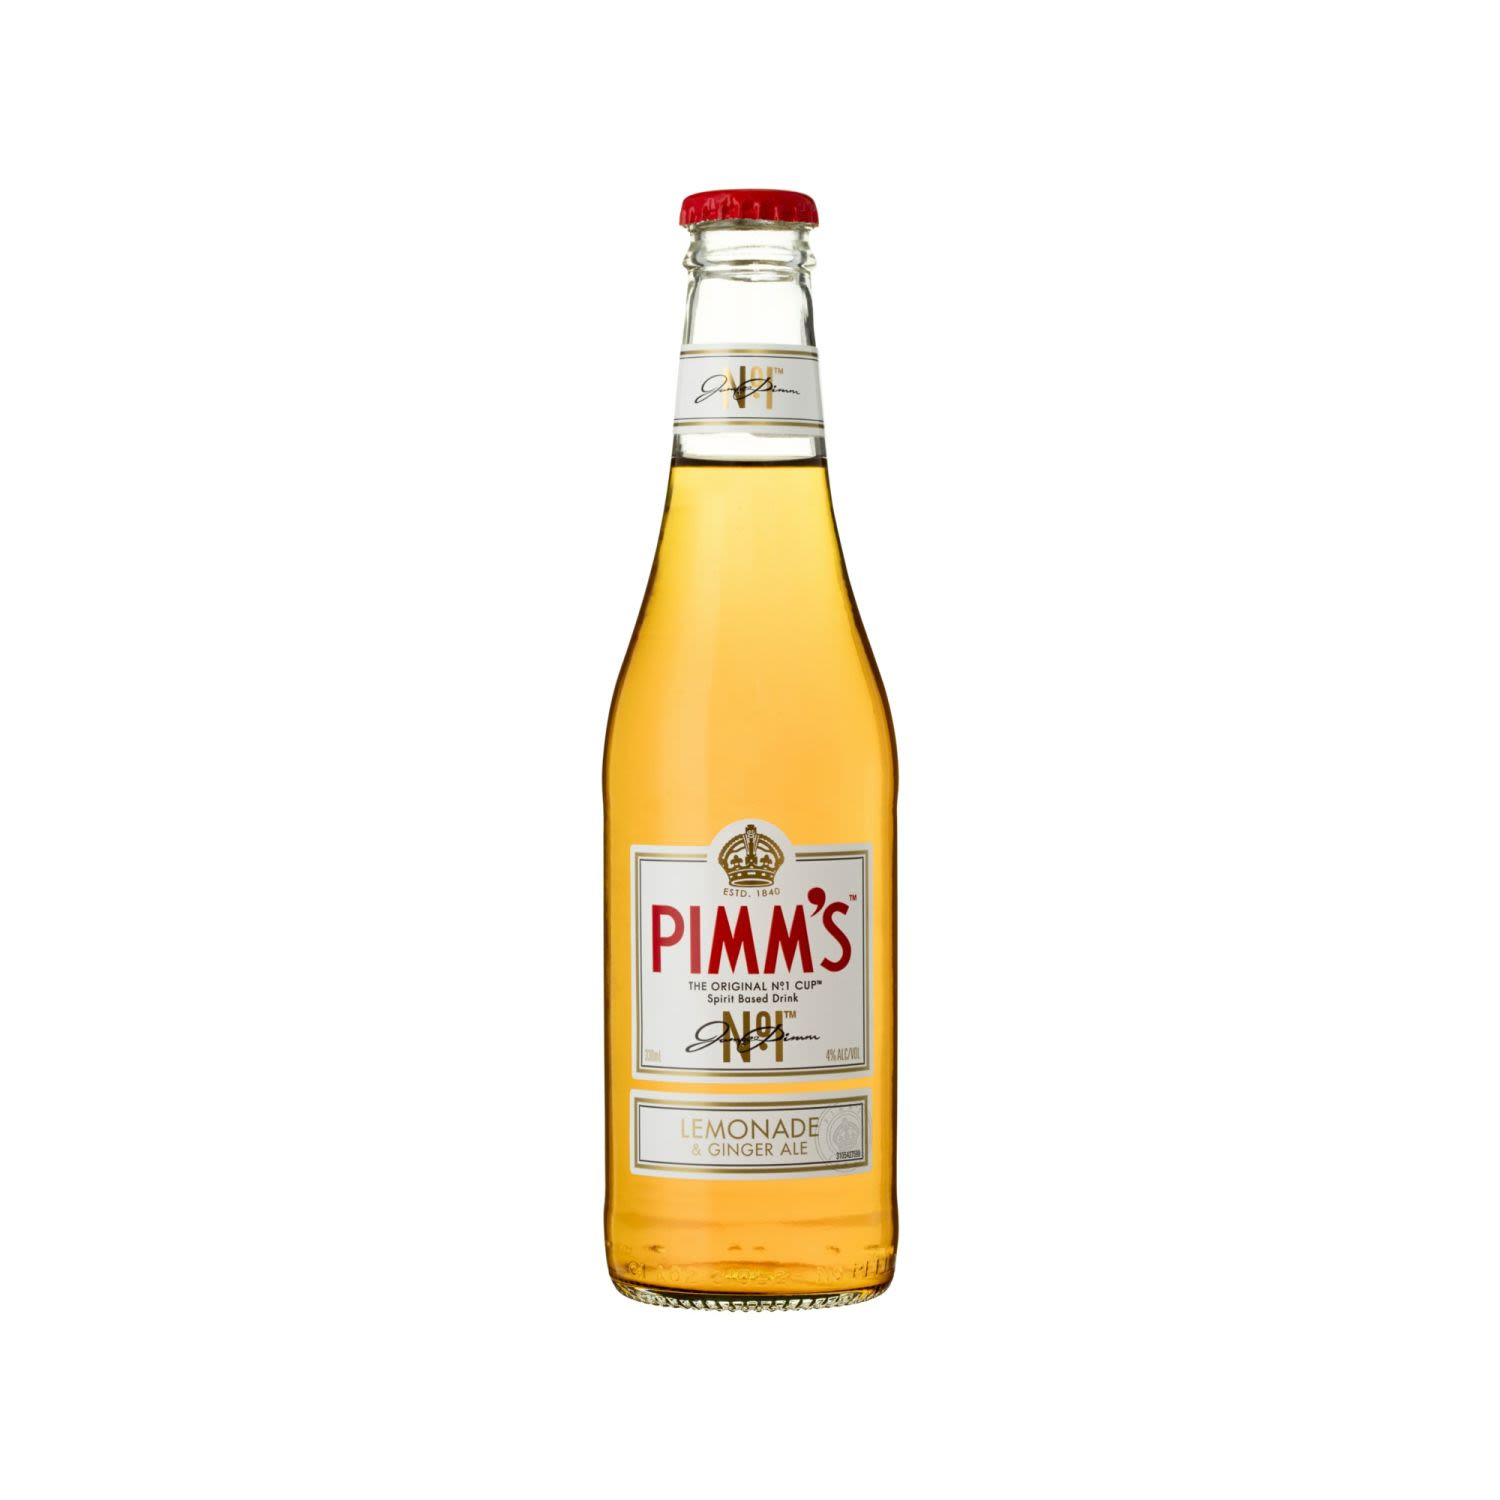 Pimm's No 1 Cup Lemonade and Ginger Ale 330mL<br /> <br />Alcohol Volume: 4.00%<br /><br />Pack Format: Bottle<br /><br />Standard Drinks: 1<br /><br />Pack Type: Bottle<br />